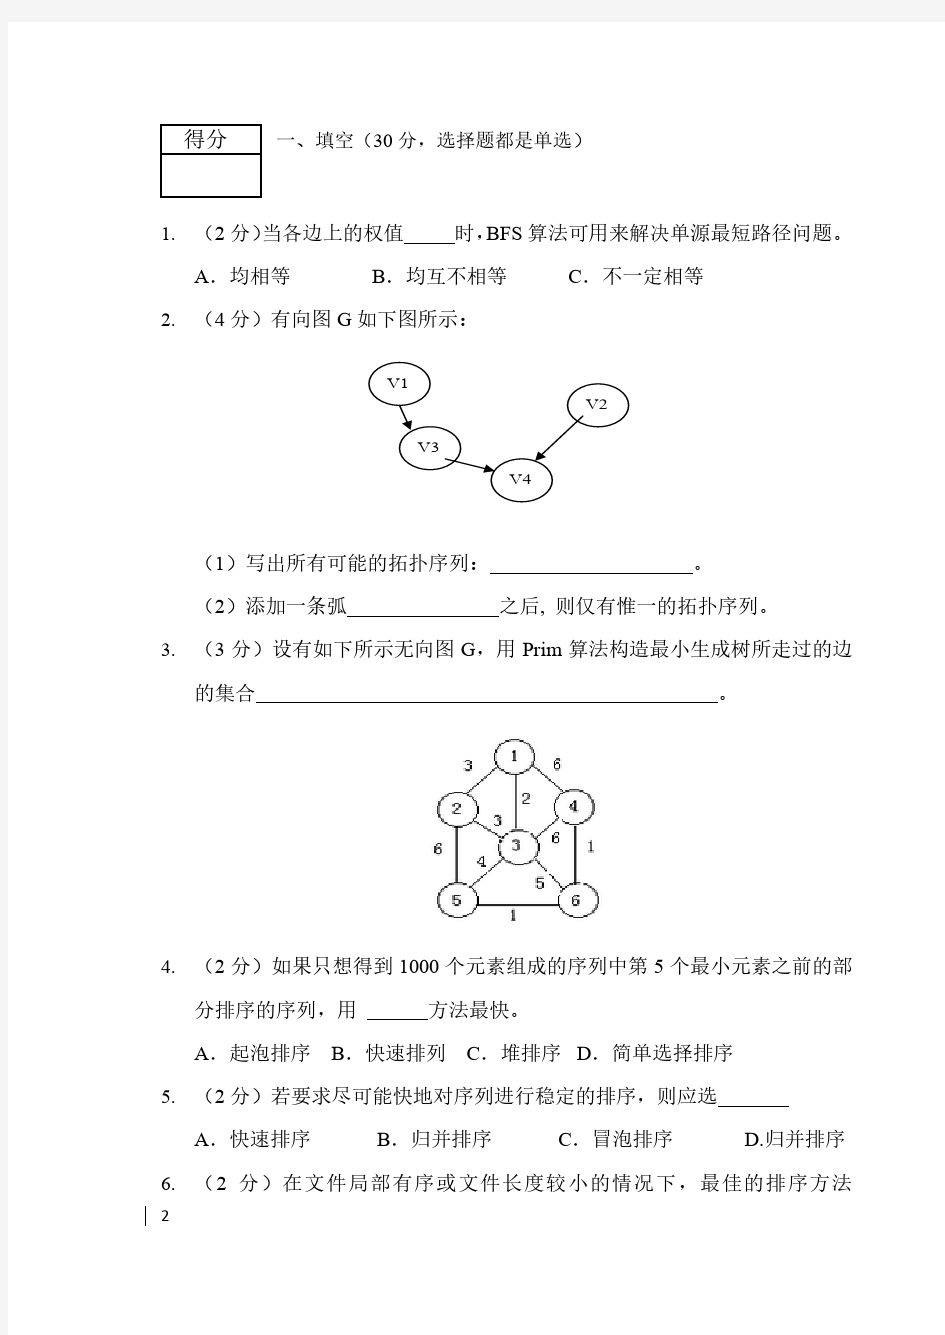 北京大学数据结构与算法北大2013数算期末考试题考试